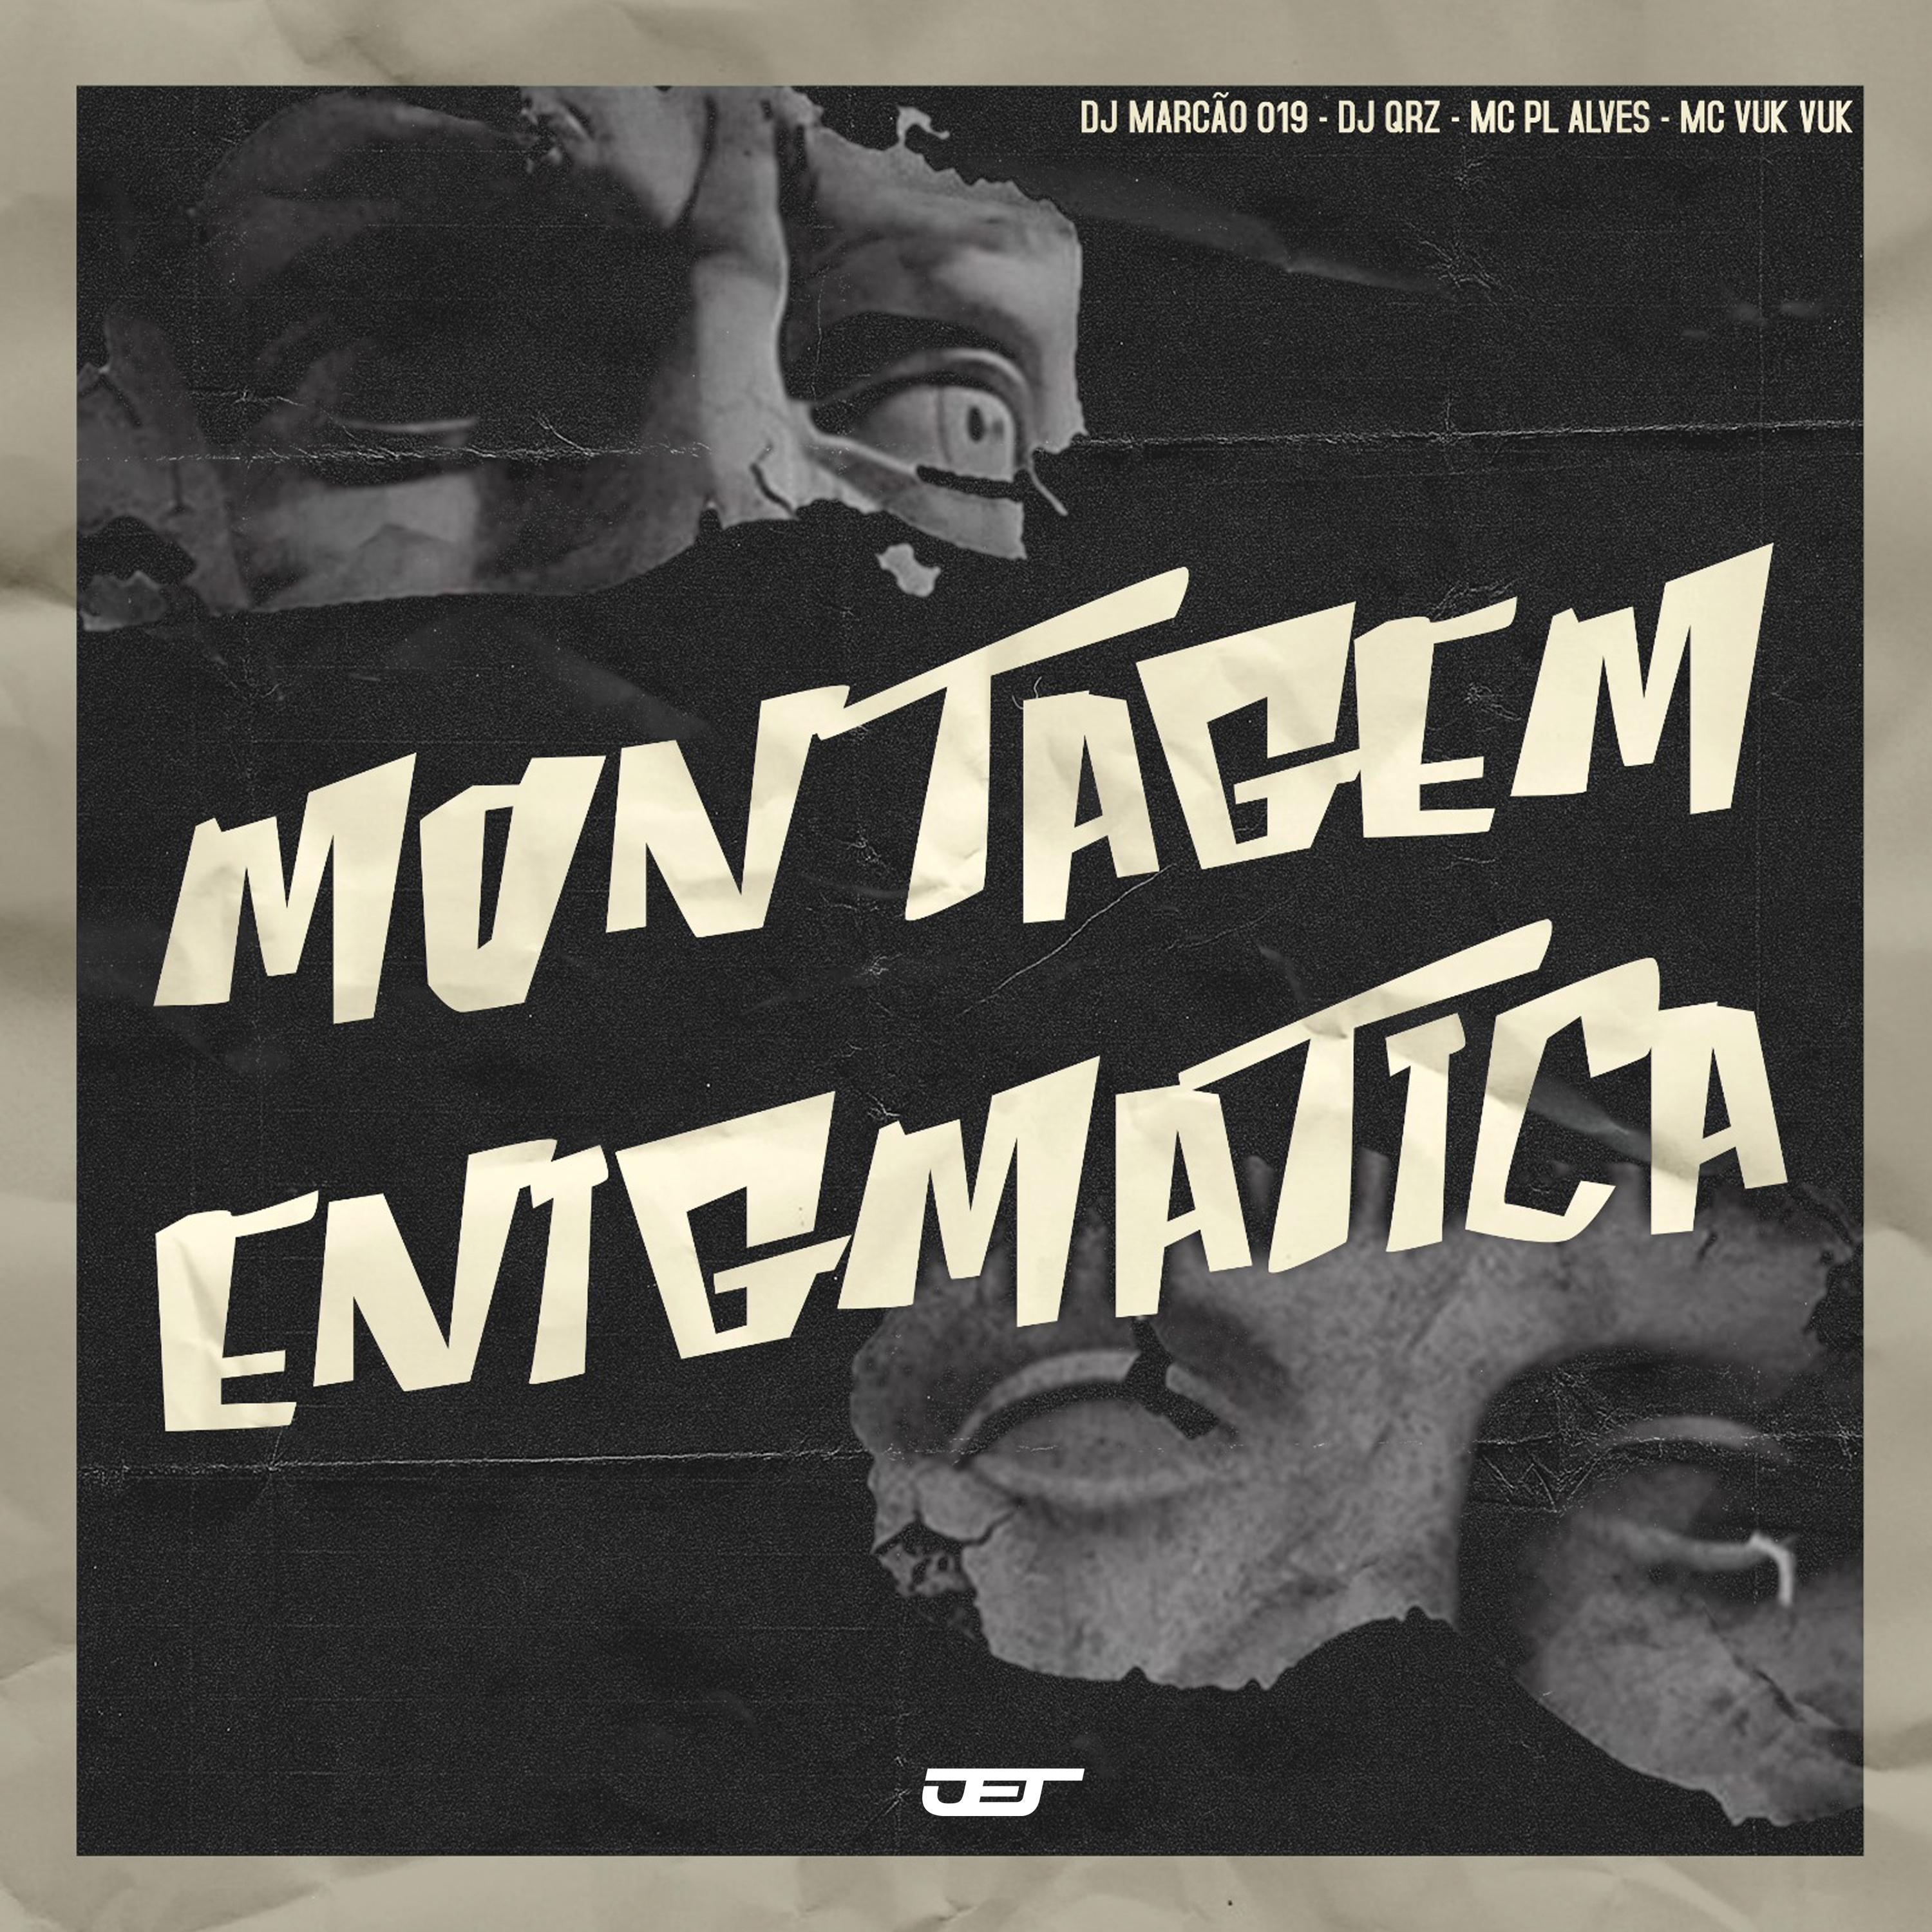 DJ MARCÃO 019 - Montagem Enigmatica